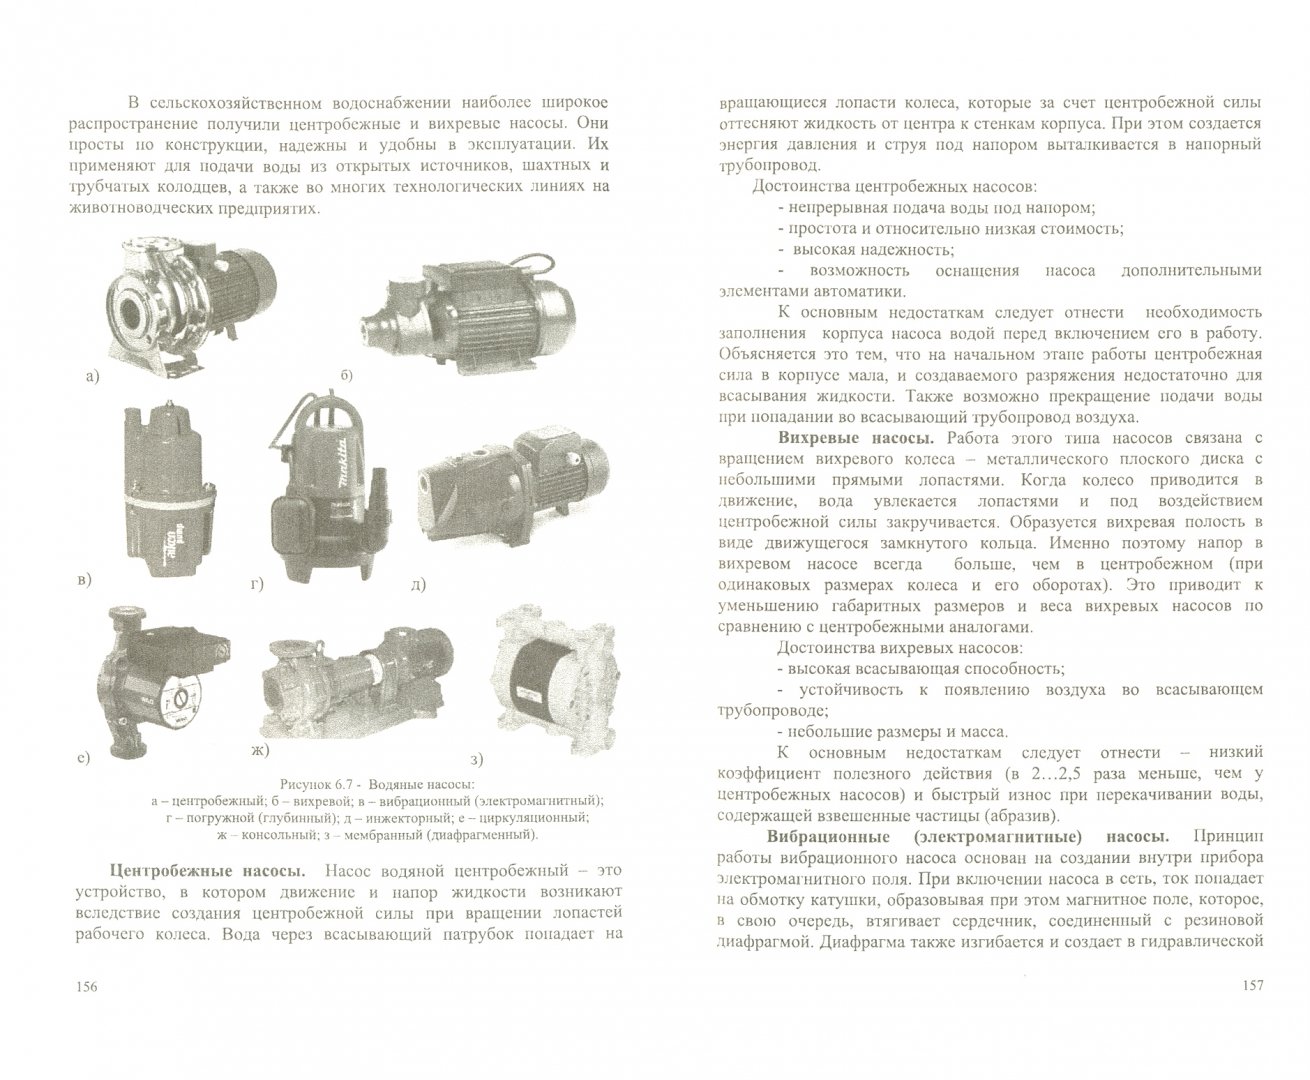 Иллюстрация 1 из 6 для Техника и технологии в животноводстве.Уч.пос - Трухачев, Атанов, Капустин, Грицай | Лабиринт - книги. Источник: Лабиринт